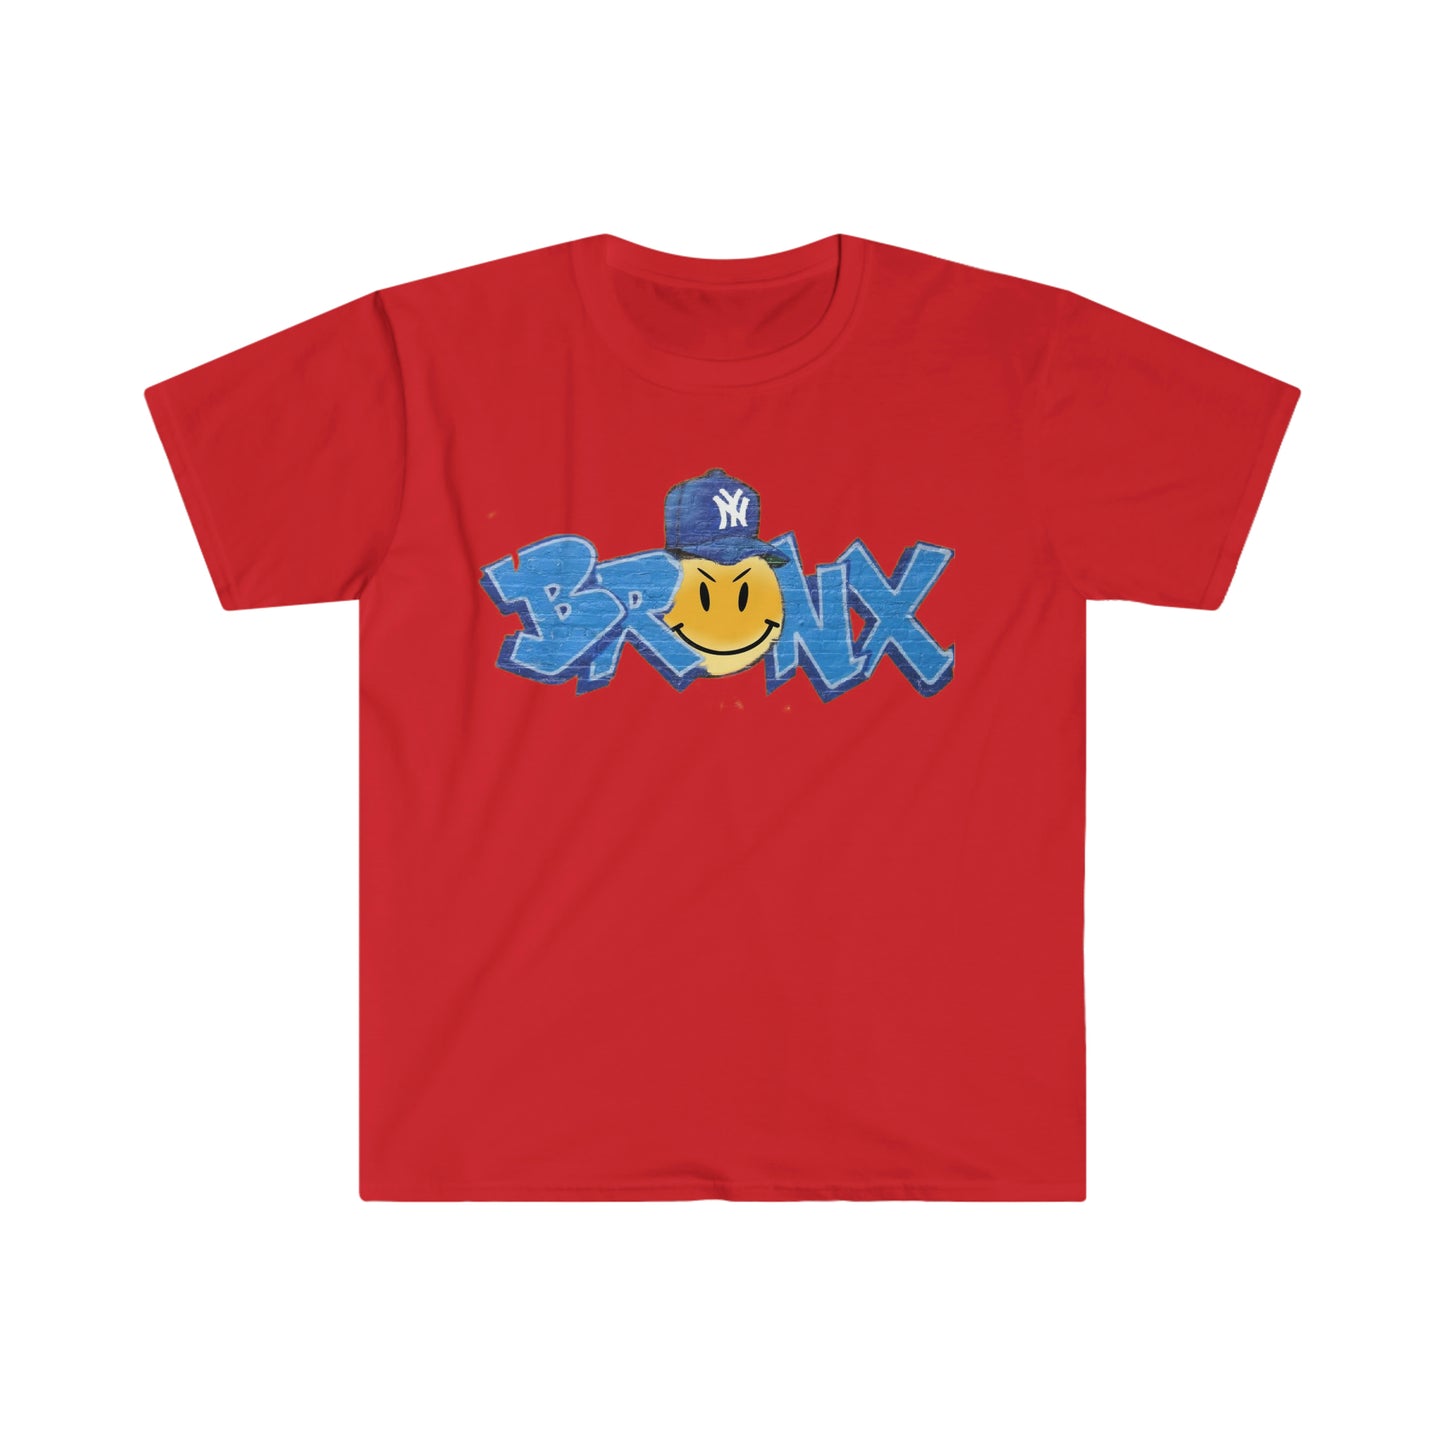 Bronx NY Unisex Softstyle T-Shirt